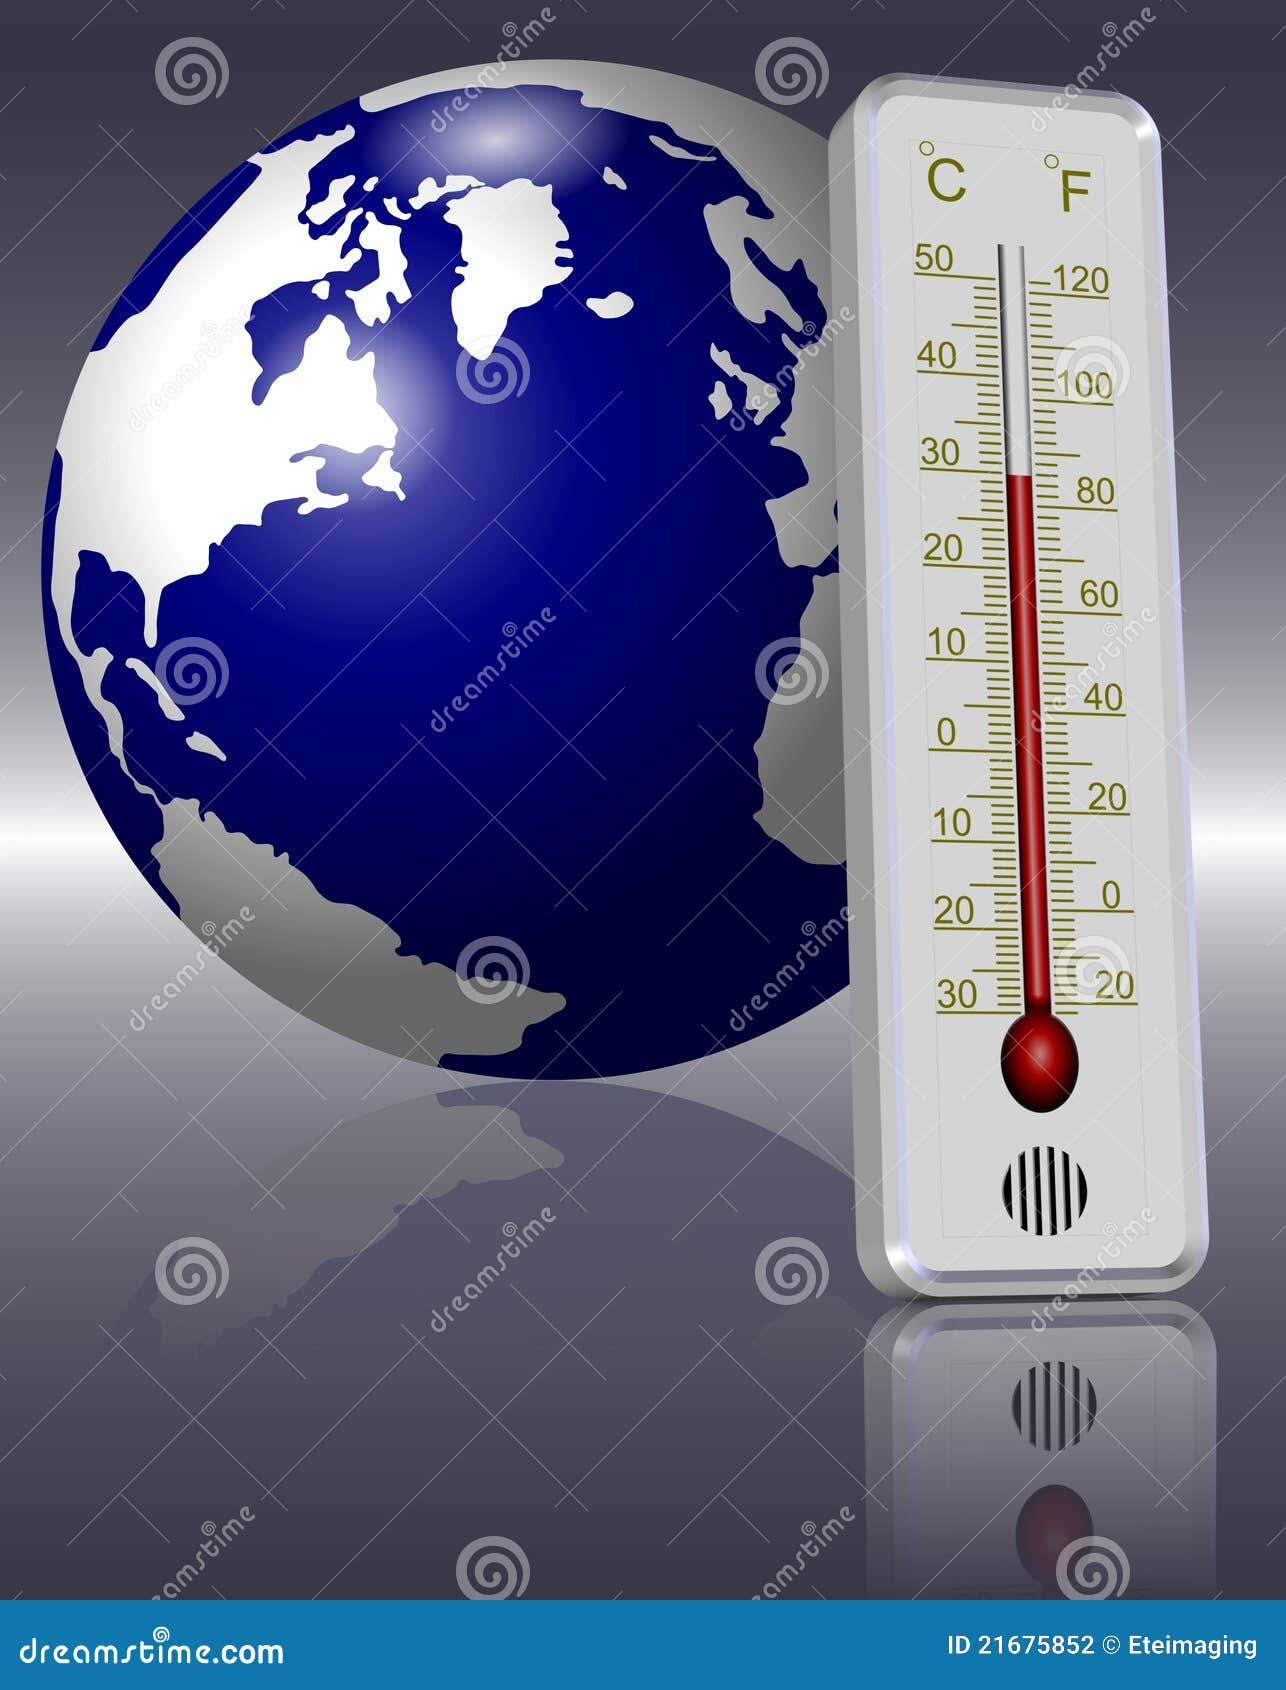 Градусник для земли. Термометр для земли. Глобальное потепление градусник. Земельный градусник. Градусник для измерения температуры земли.